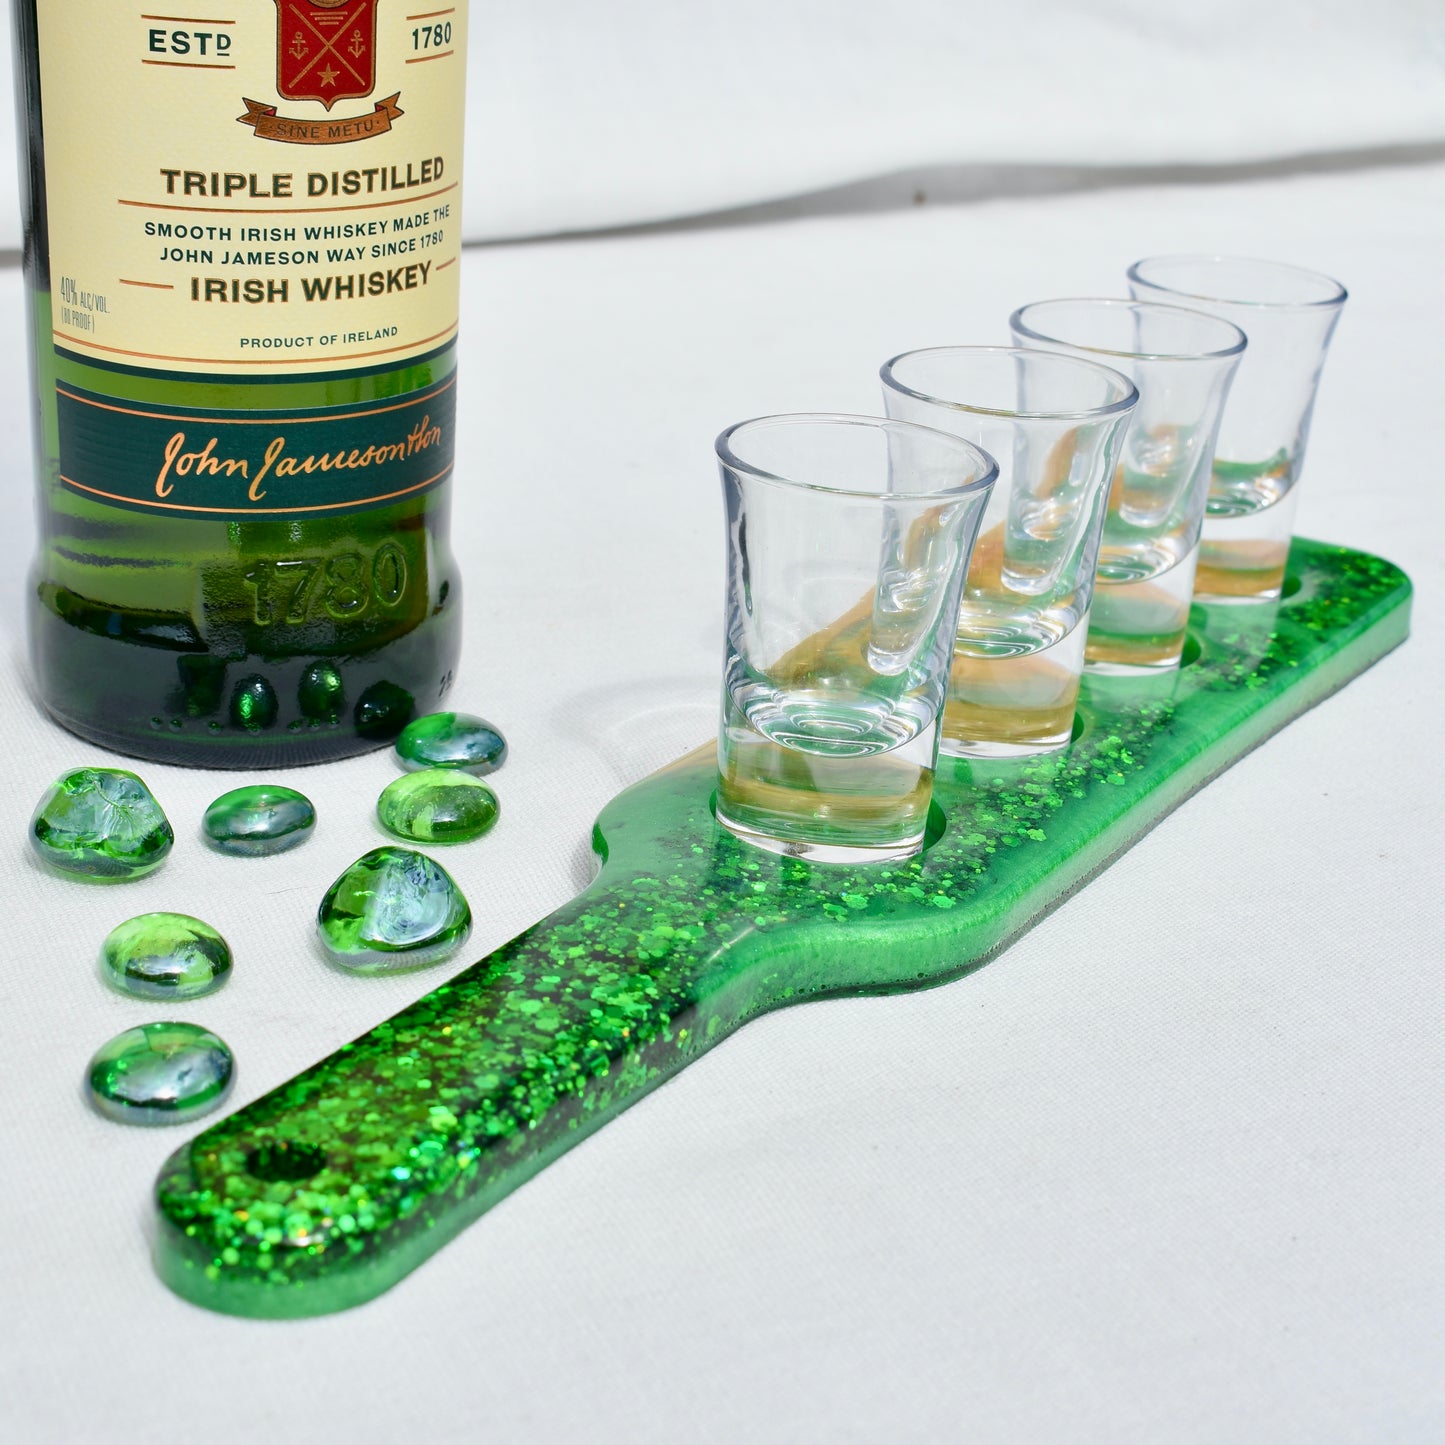 Irish Cheers Drink Holder